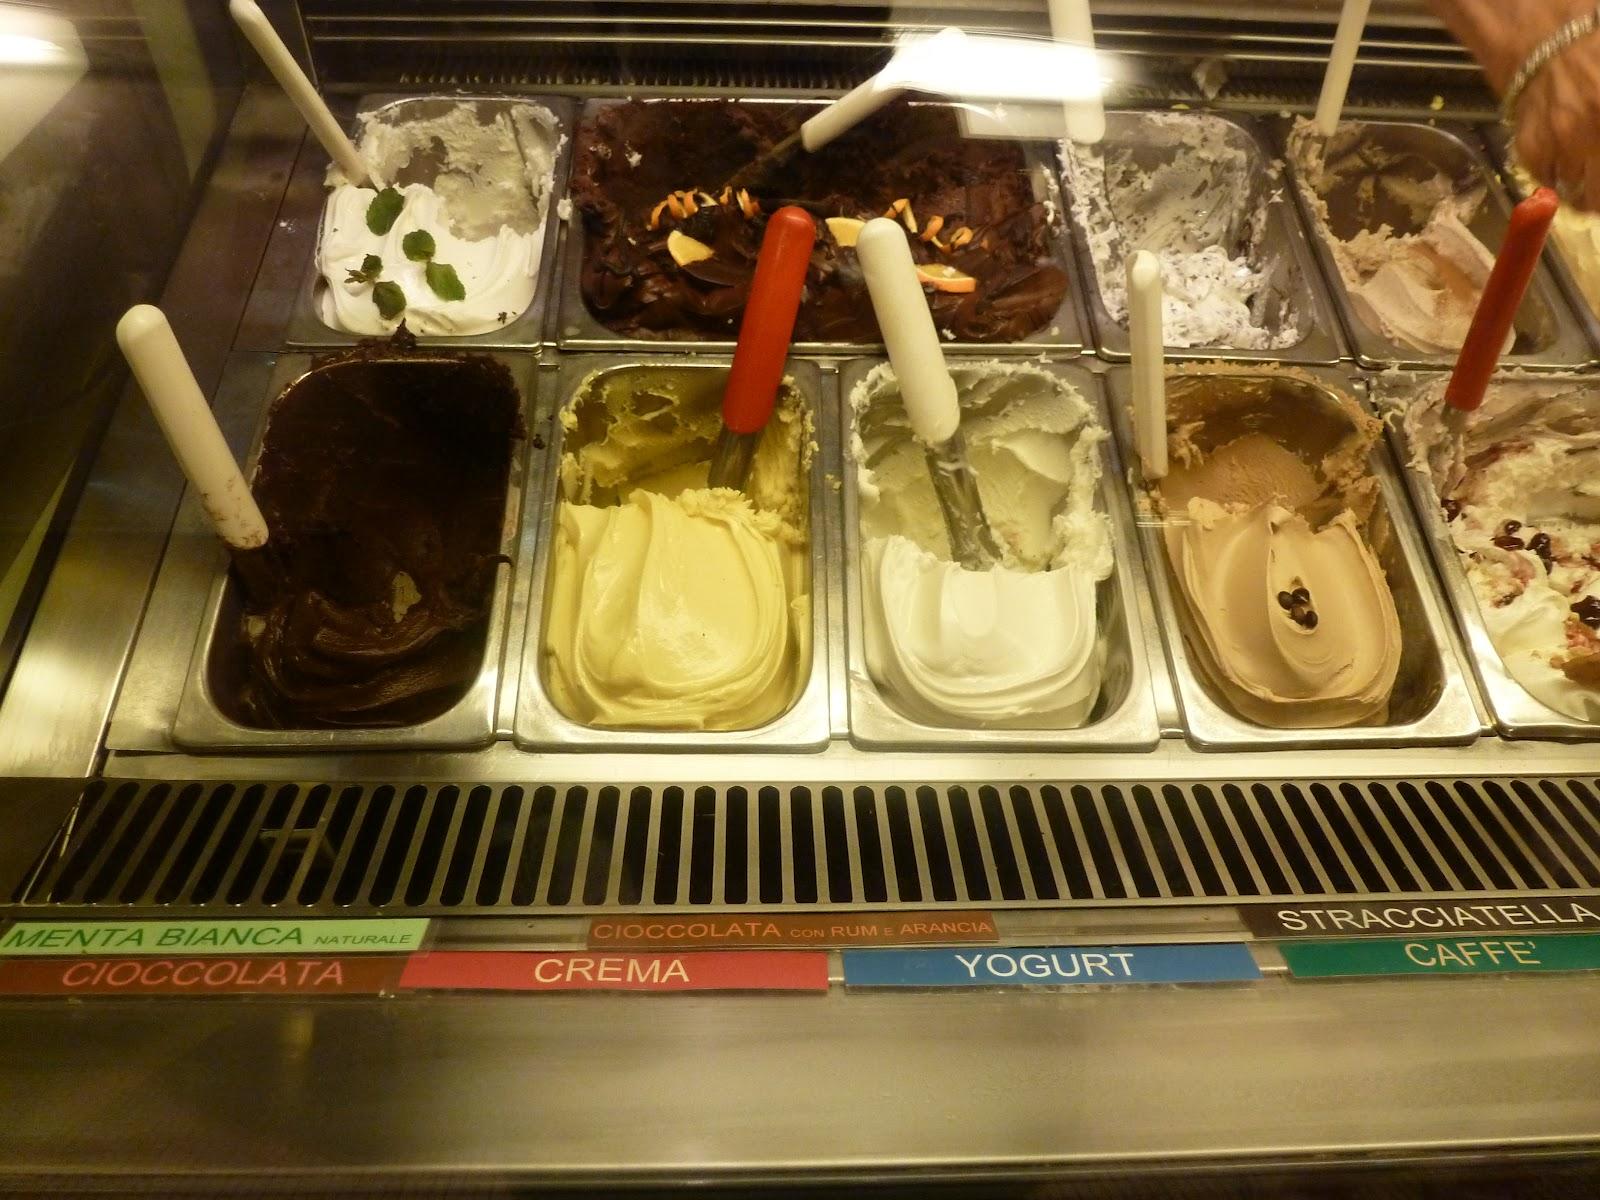 Mes bonnes adresses en Toscane 2: les glaces de chez Perque No à Florence